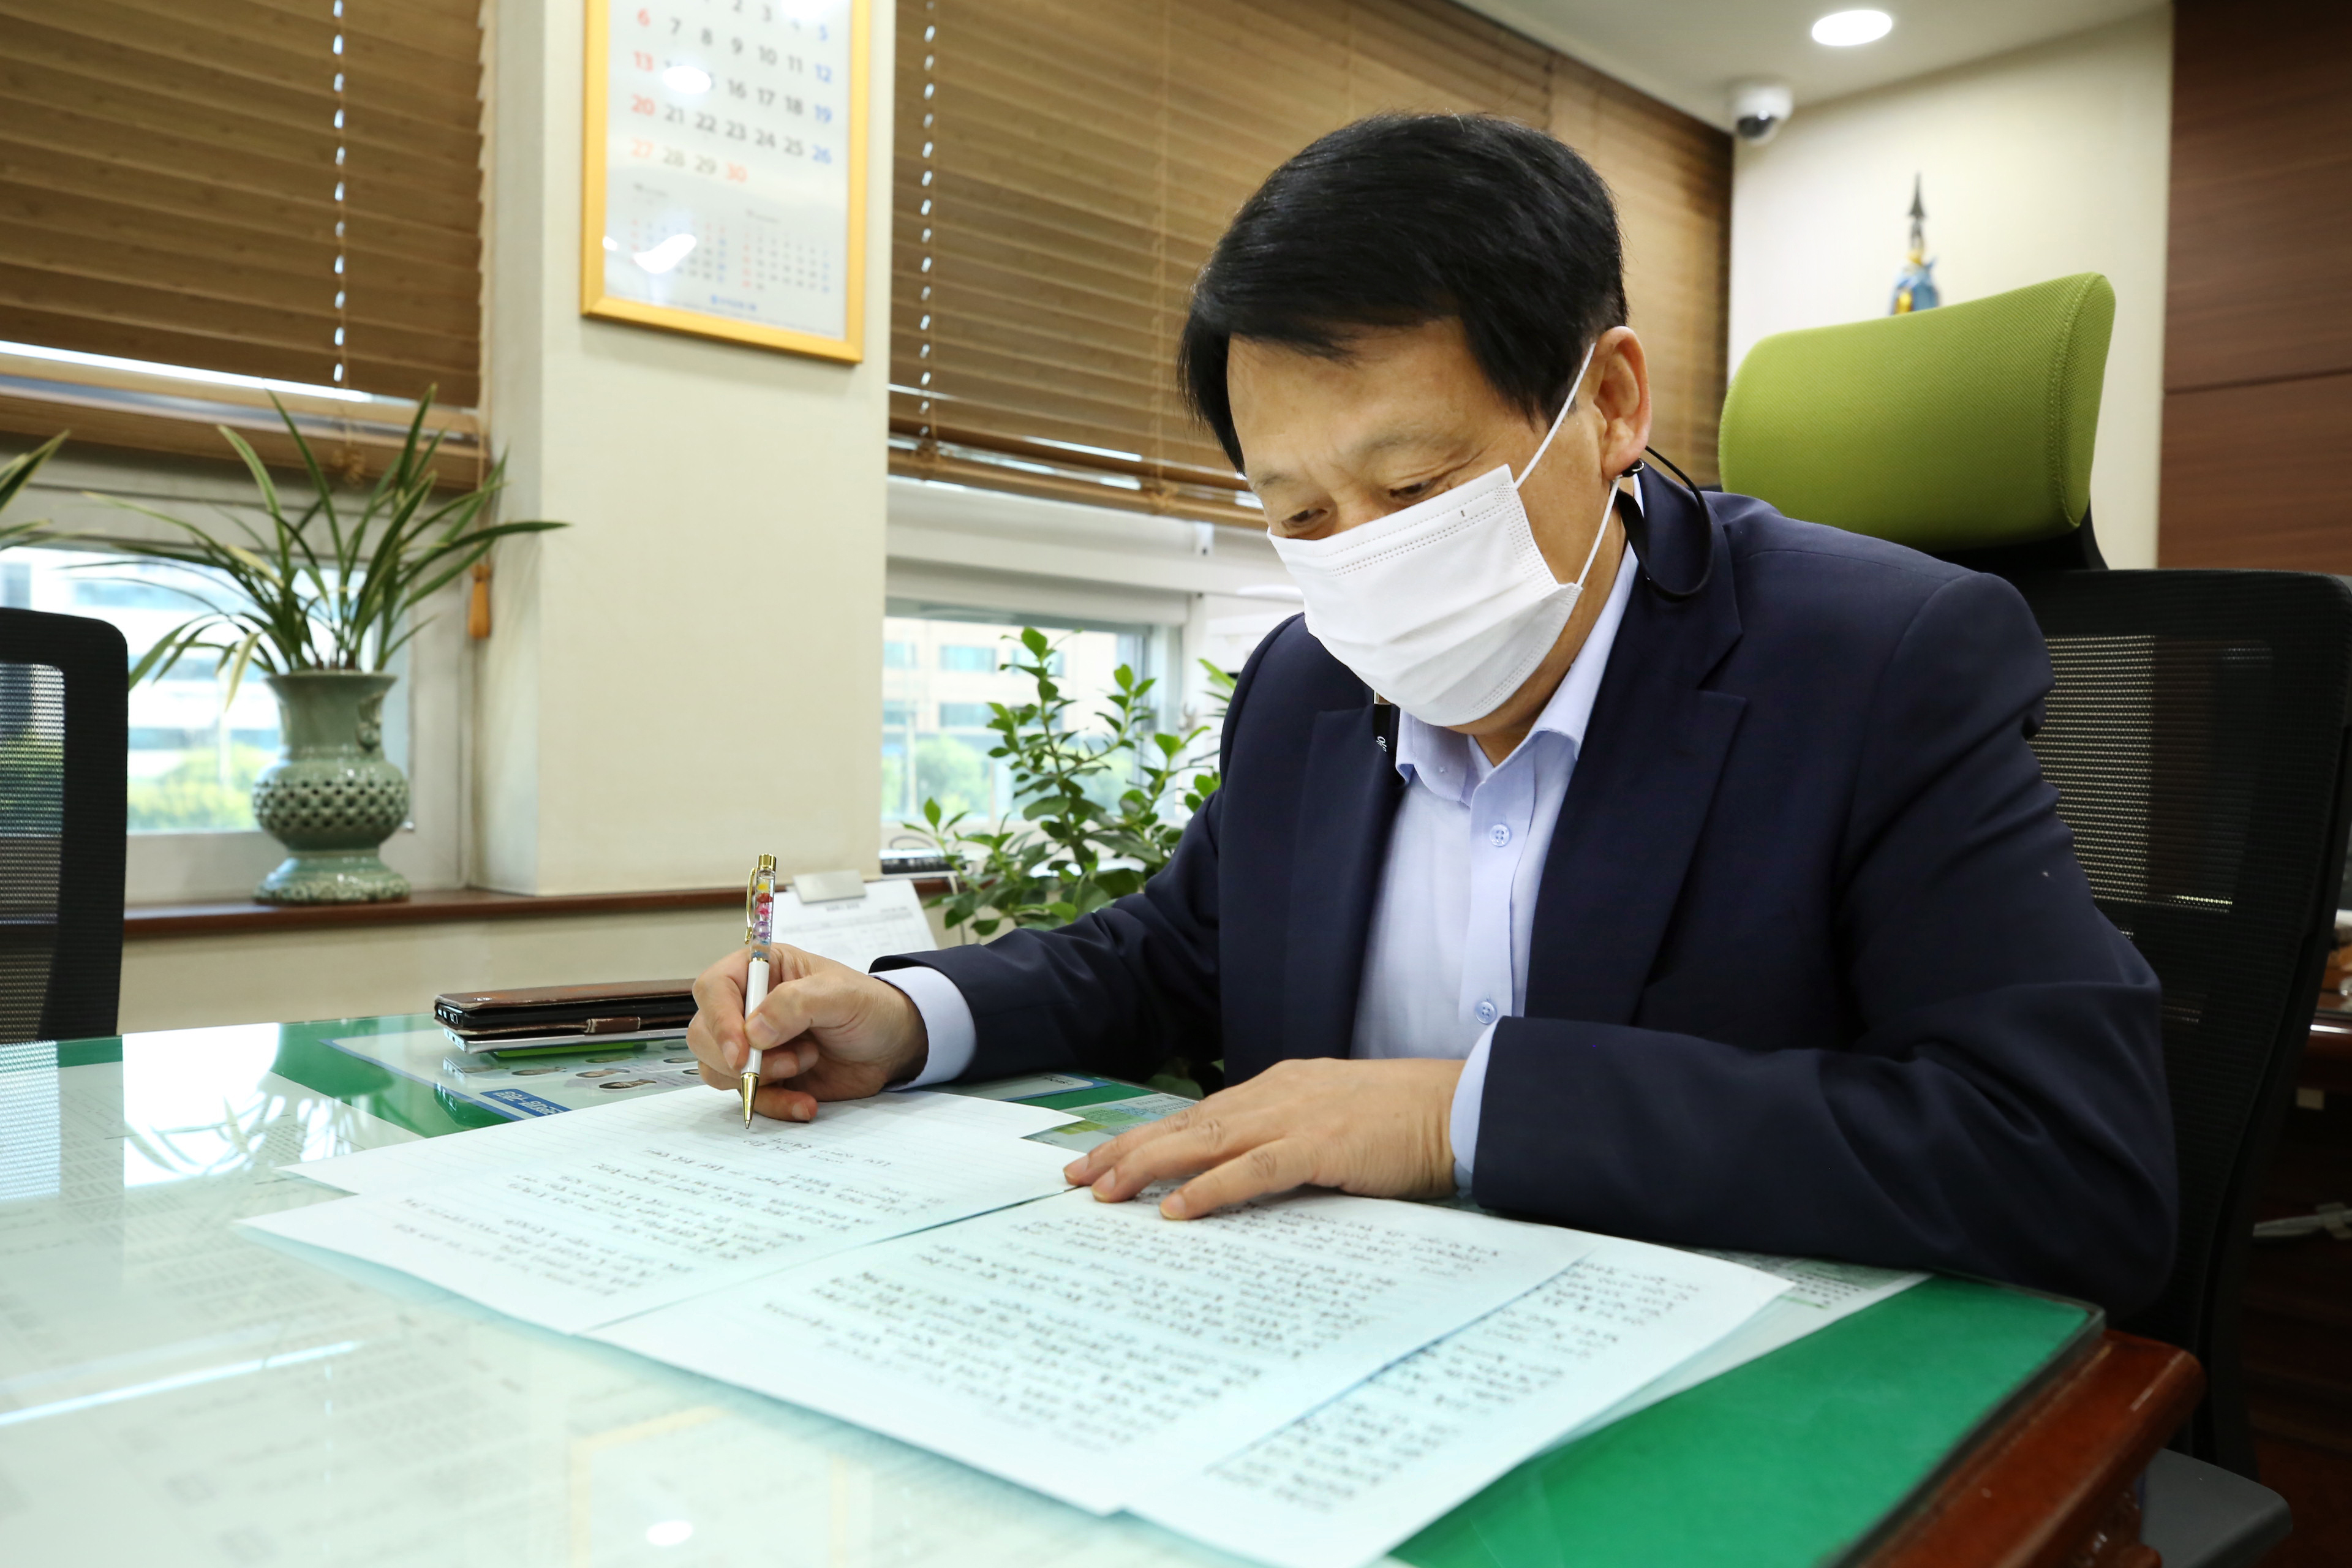 이성 구로구청장이 지난 21일 자신의 집무실에서 하늘에 계신 부모님께 손수 편지를 쓰고 있다. 구로구 제공 